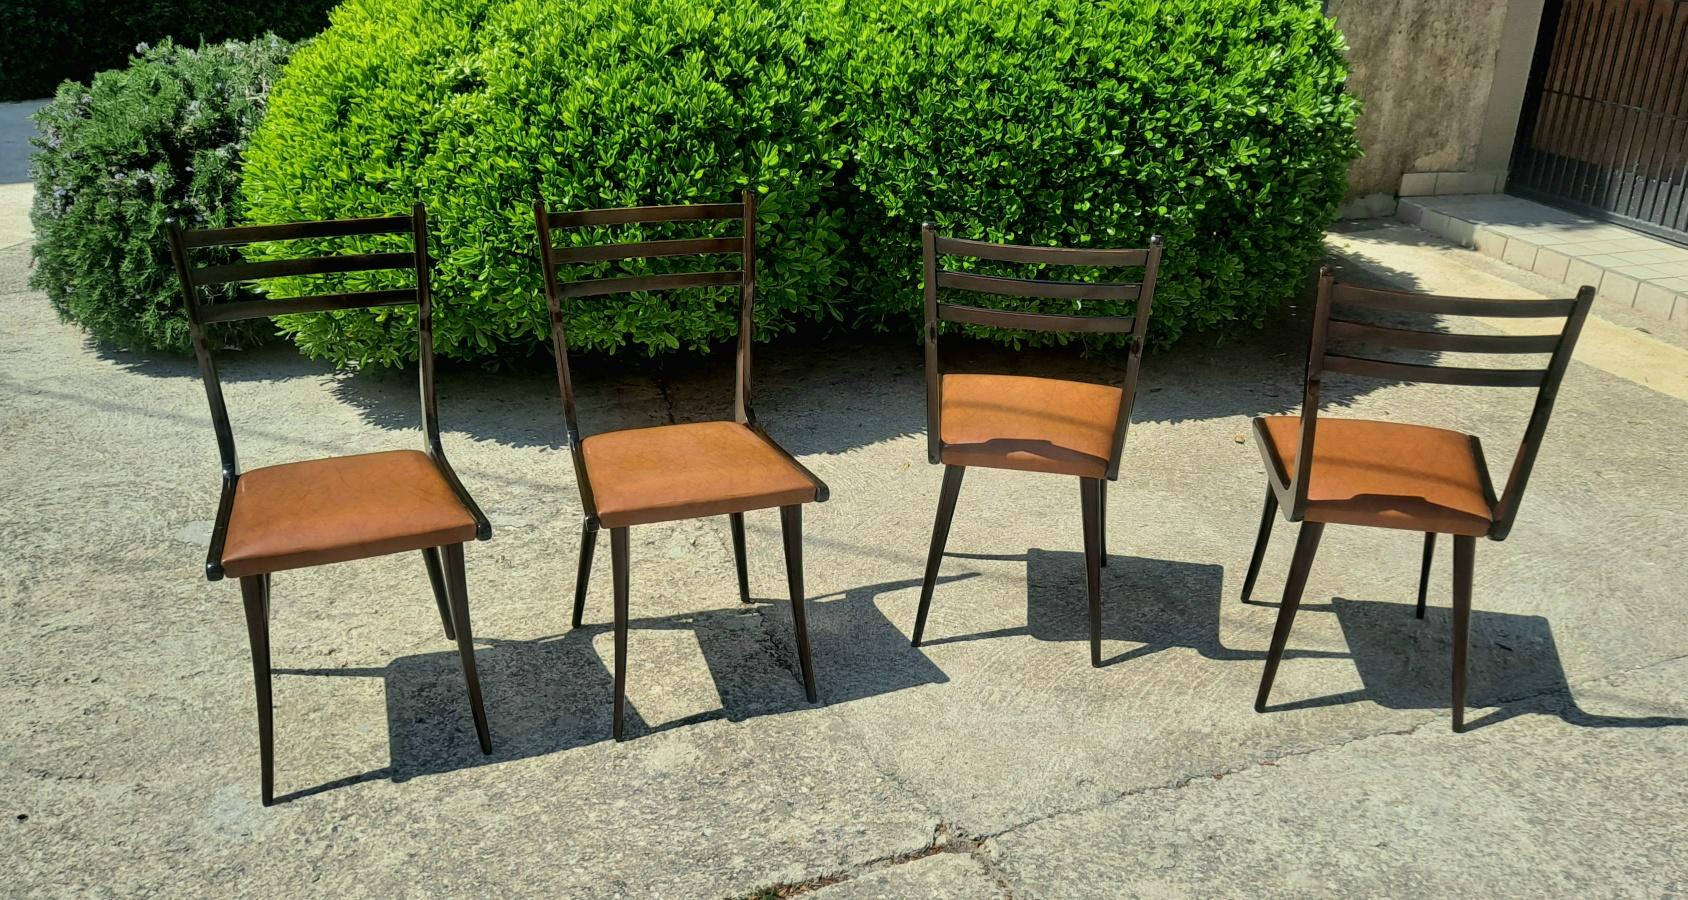  Dies ist ein originales Set von 4 Stühlen im Stil von Gio Ponti.